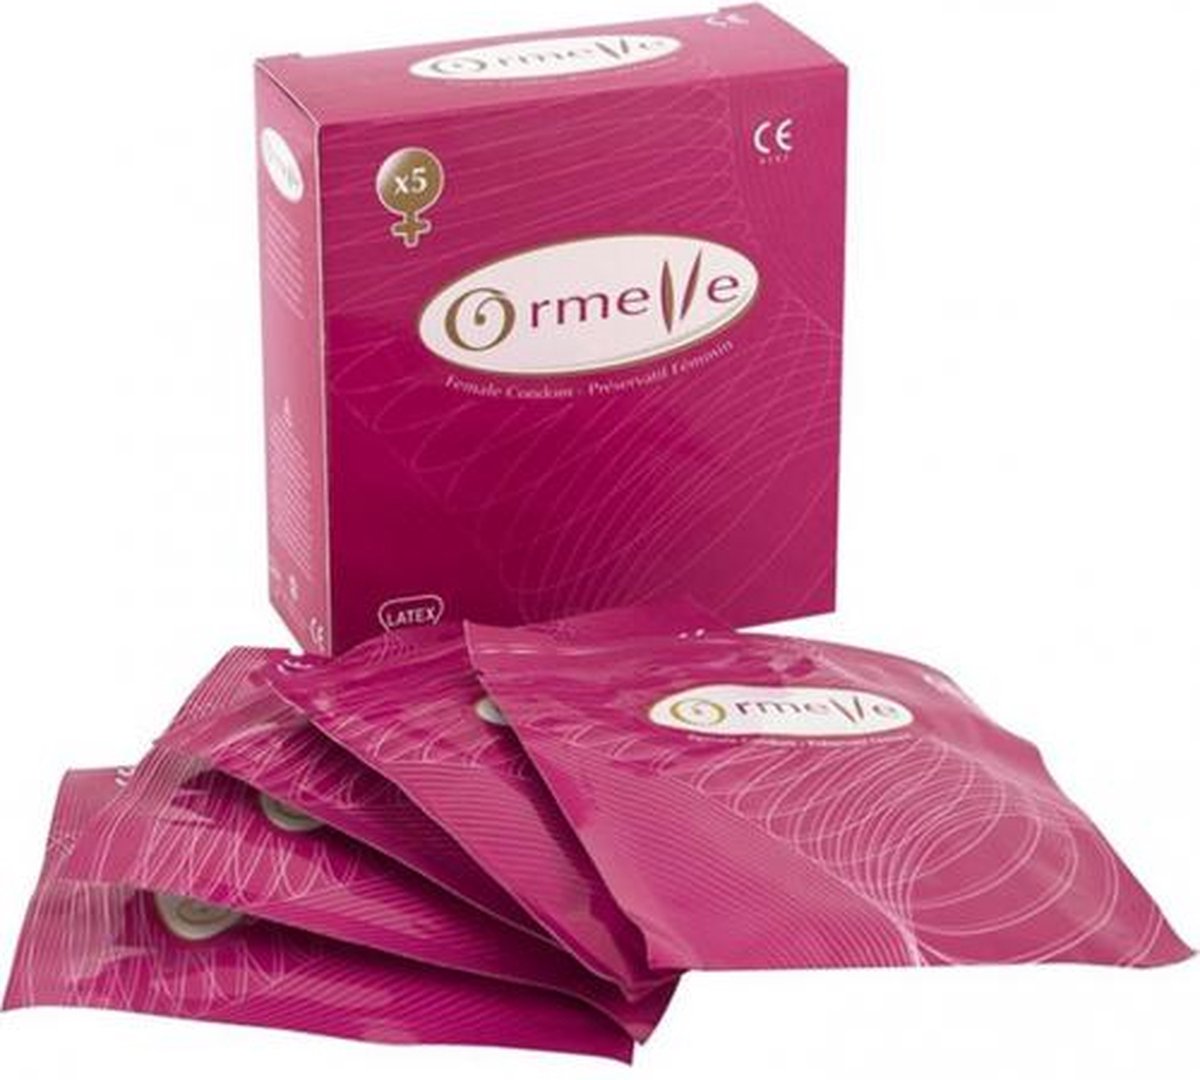 Ormelle vrouwencondoom 5 stuks - voorbehoedsmiddel voor vrouwen - condooms voor vrouwen - vrouwencondooms - vrouw condoom